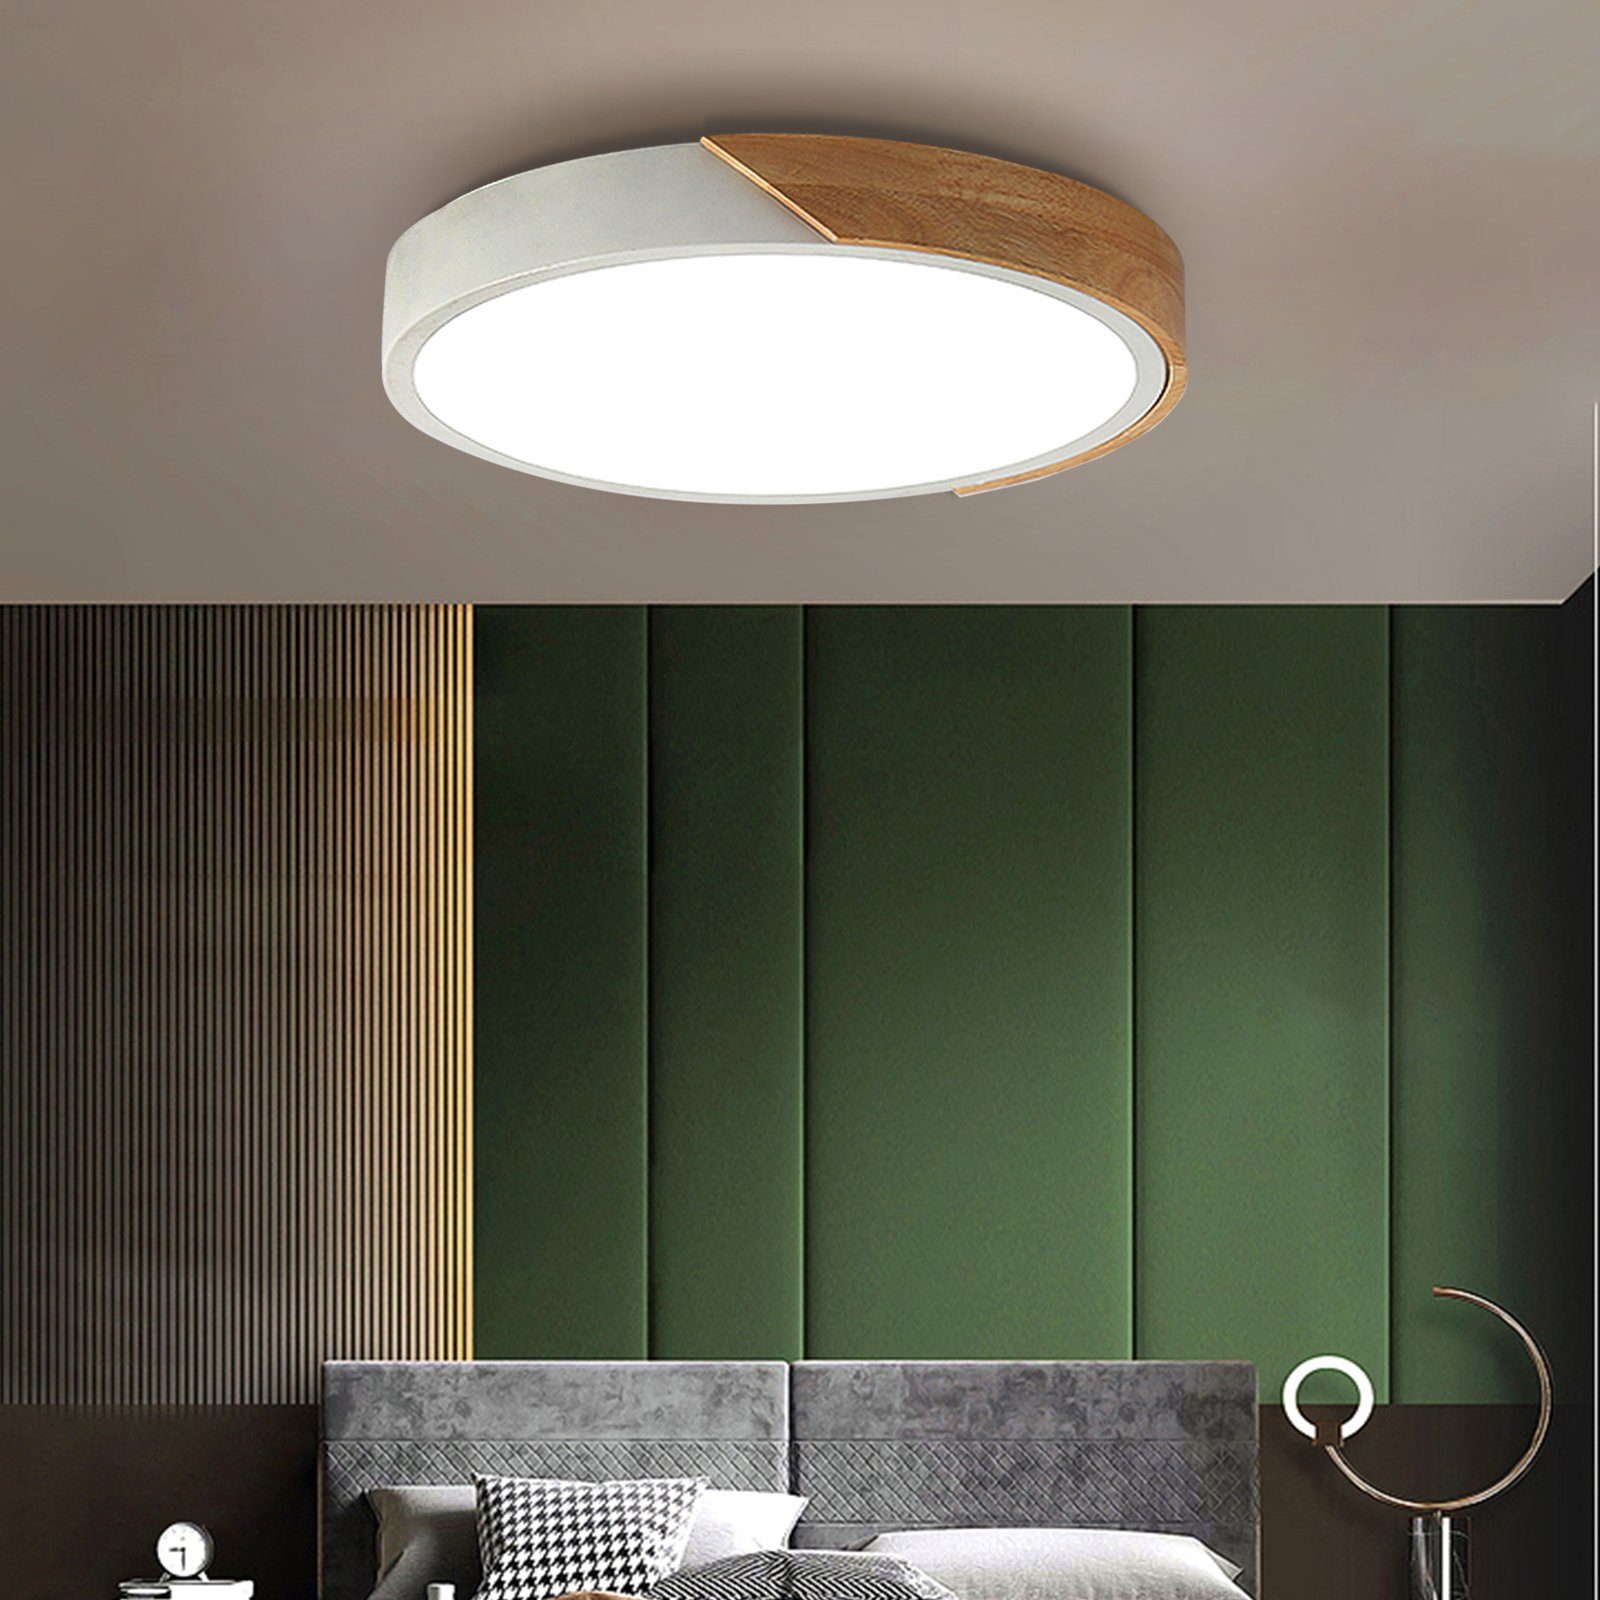 Natsen Deckenleuchte, LED fest integriert, 24W LED Deckenlampe Holz rund  (40 x 40 x 5cm), dimmbar mit Fernbedienung warmweiss-kaltweiss Lampe, für  Esszimmer Kinderzimmer Schlafzimmer